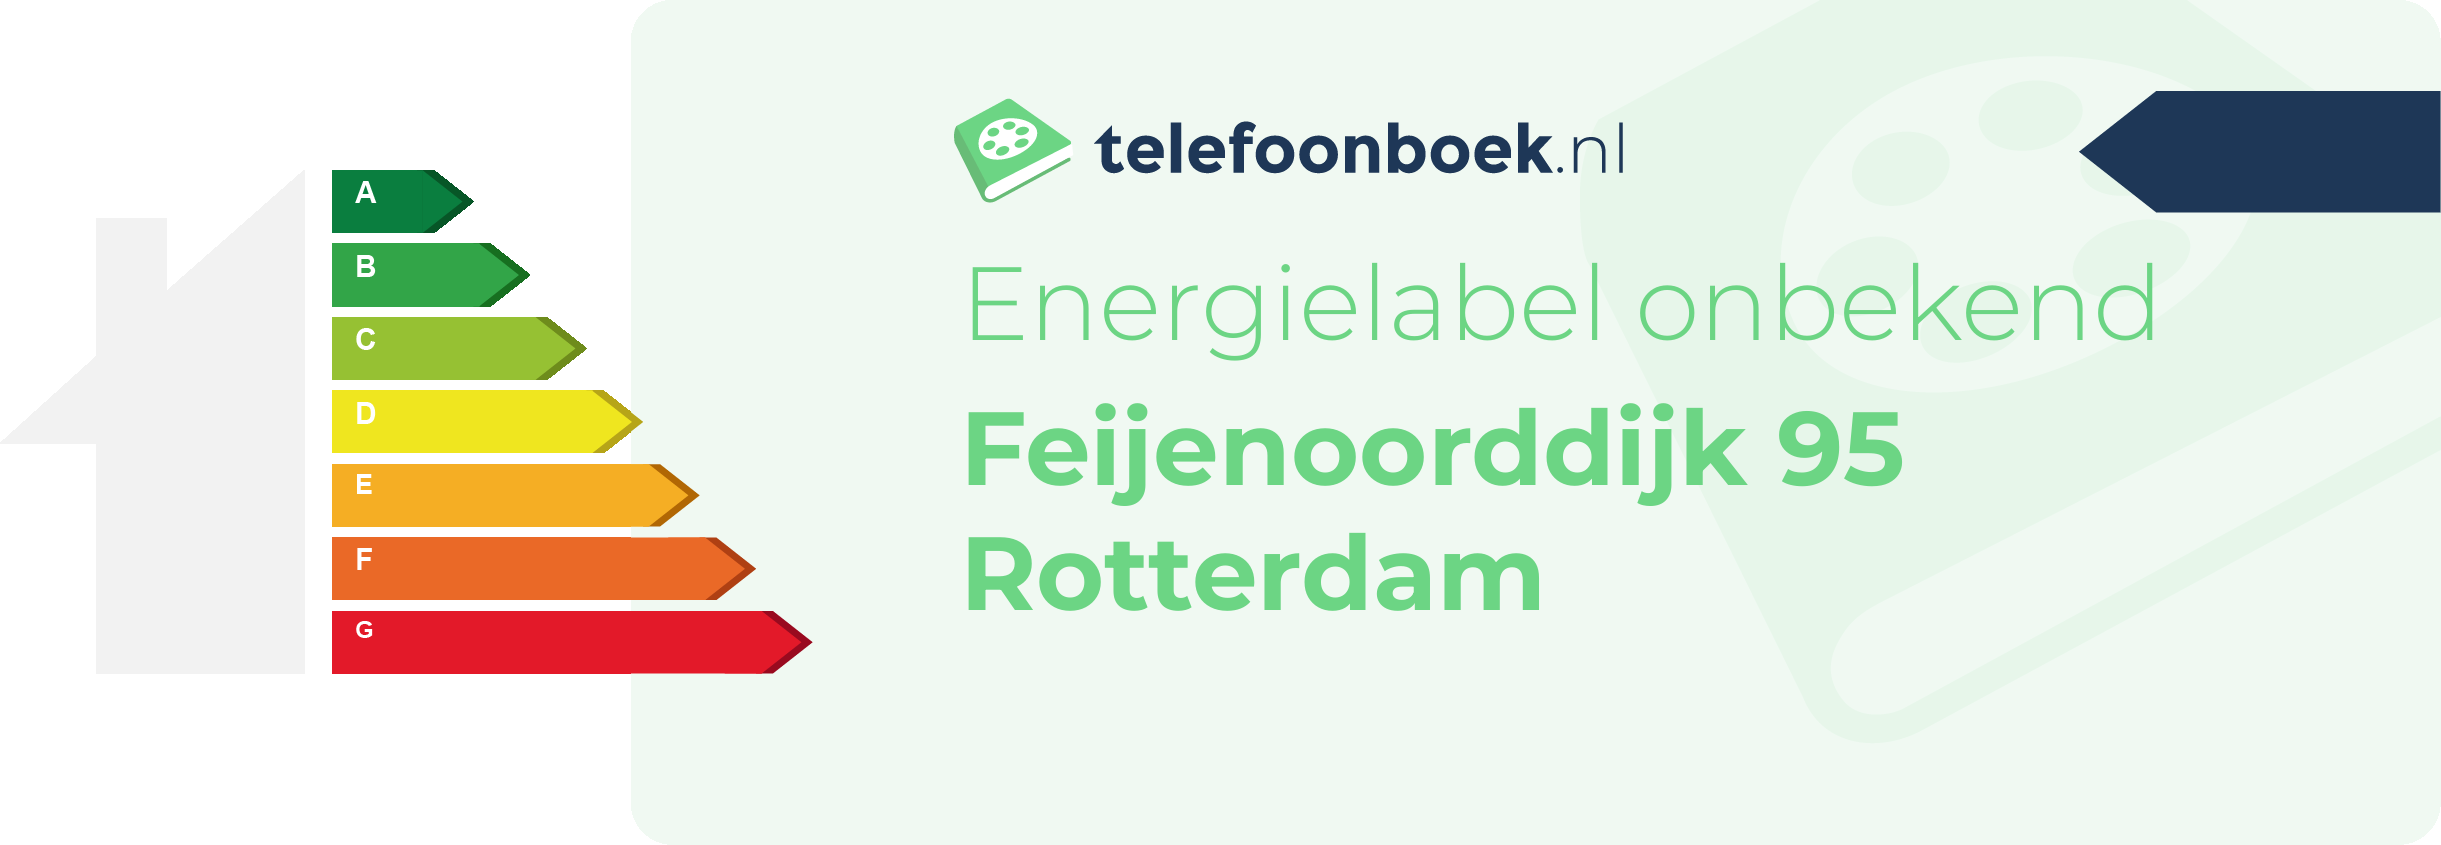 Energielabel Feijenoorddijk 95 Rotterdam